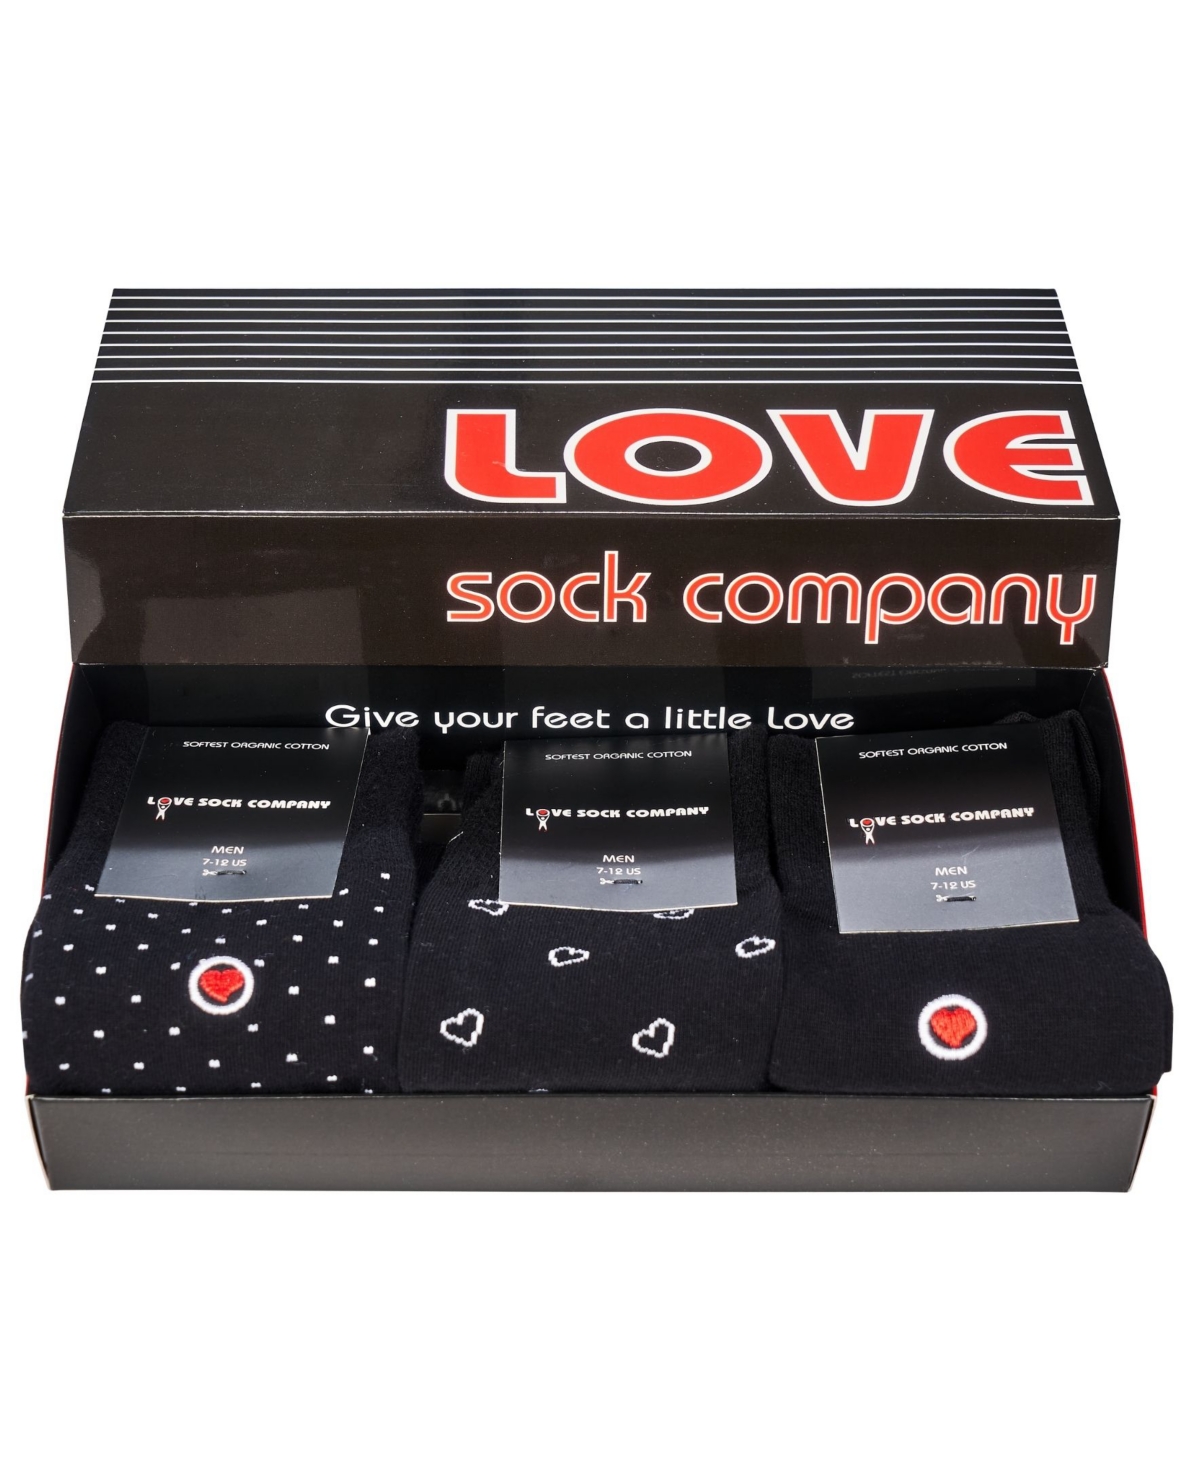 Men's Luxury Dress Socks in Gift Box, Pack of 3 - Black